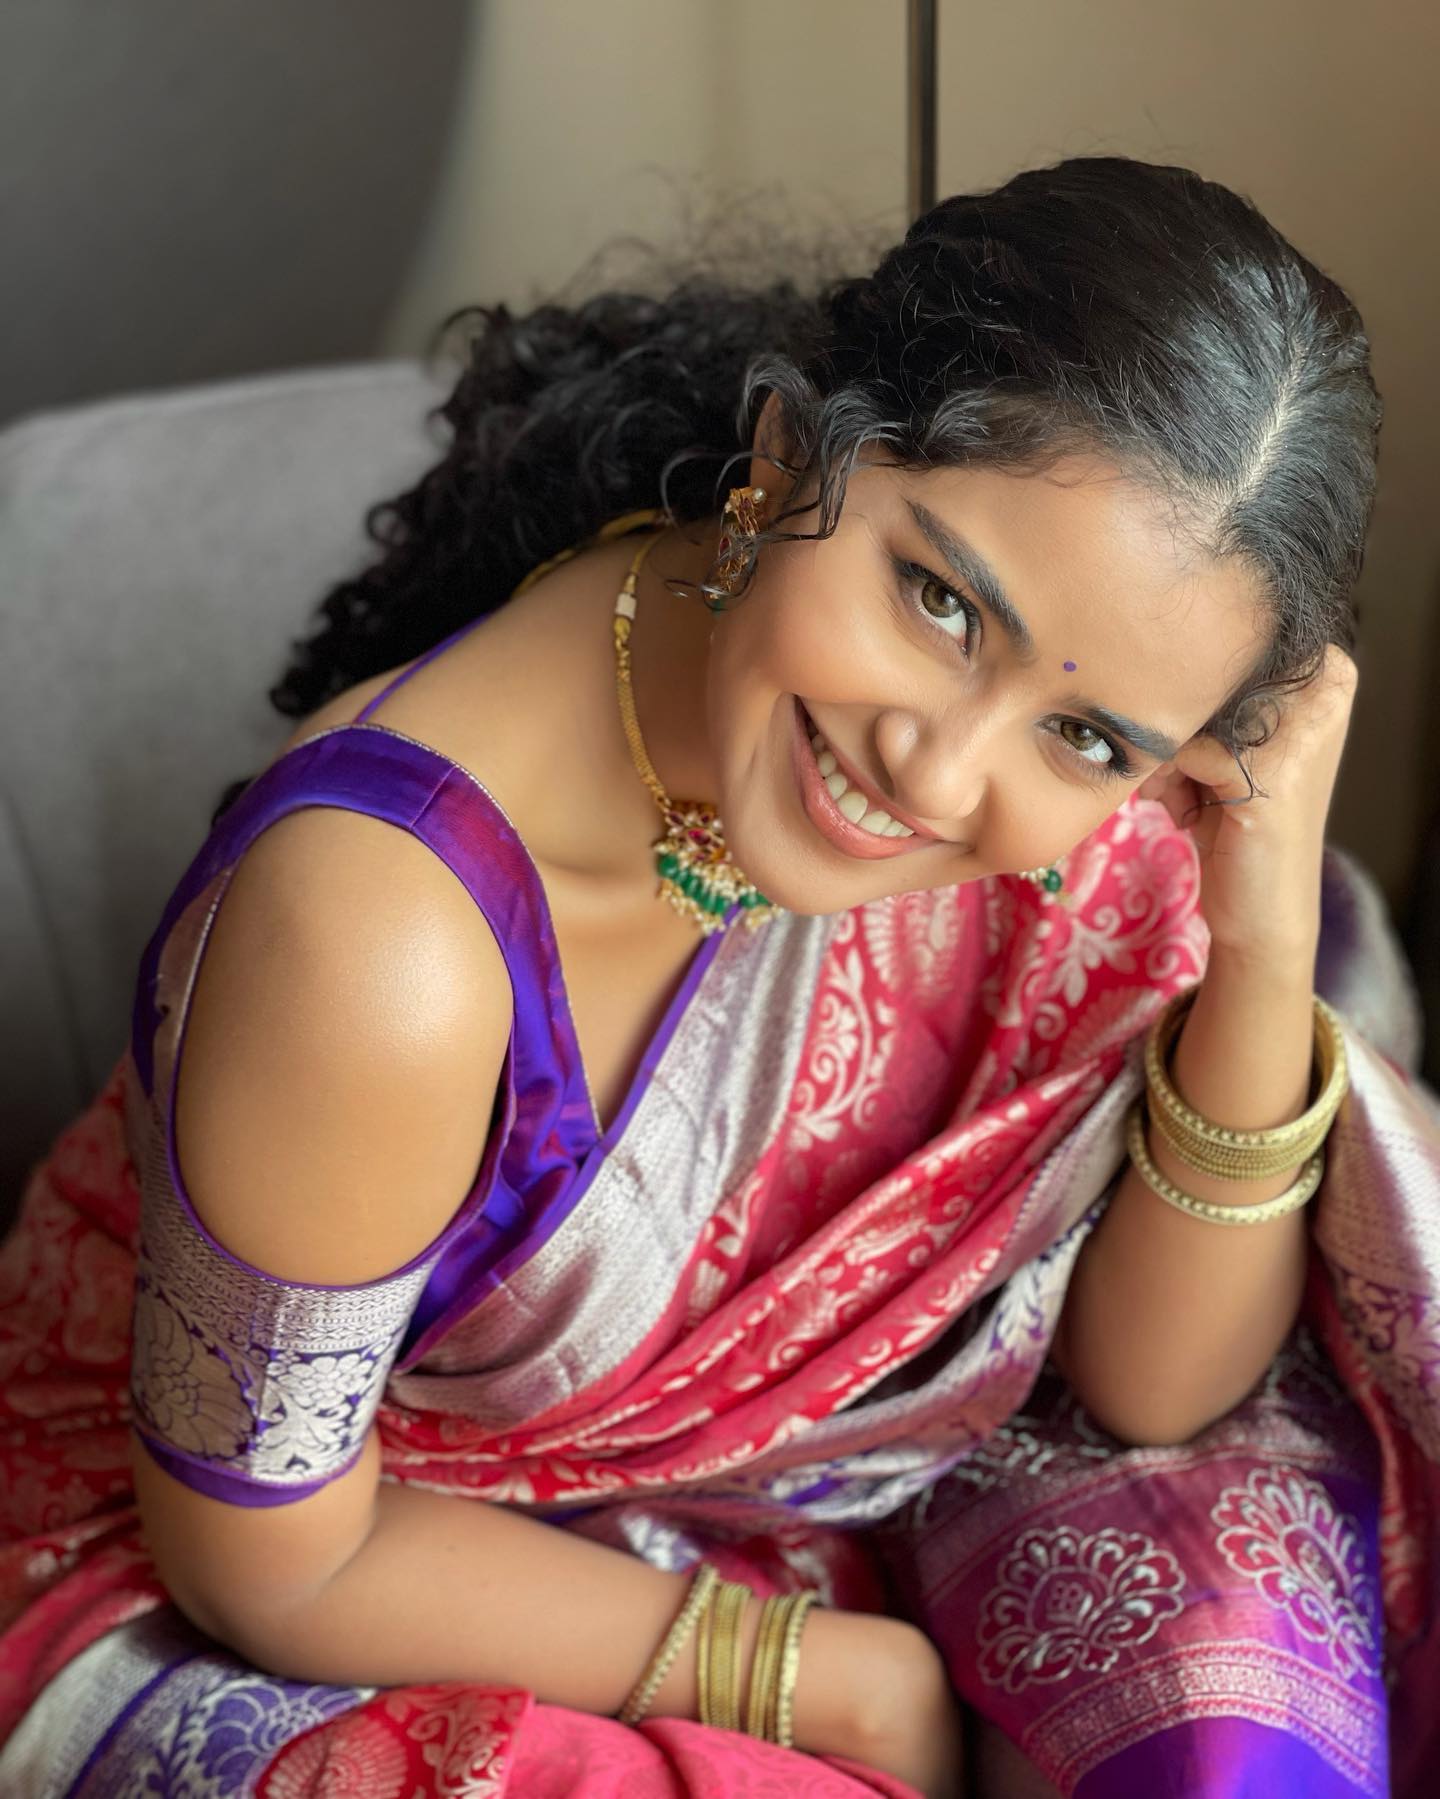  நடிகை அனுபமா பரமேஸ்வரன் ( Image : Instagram @anupamaparameswaran96)